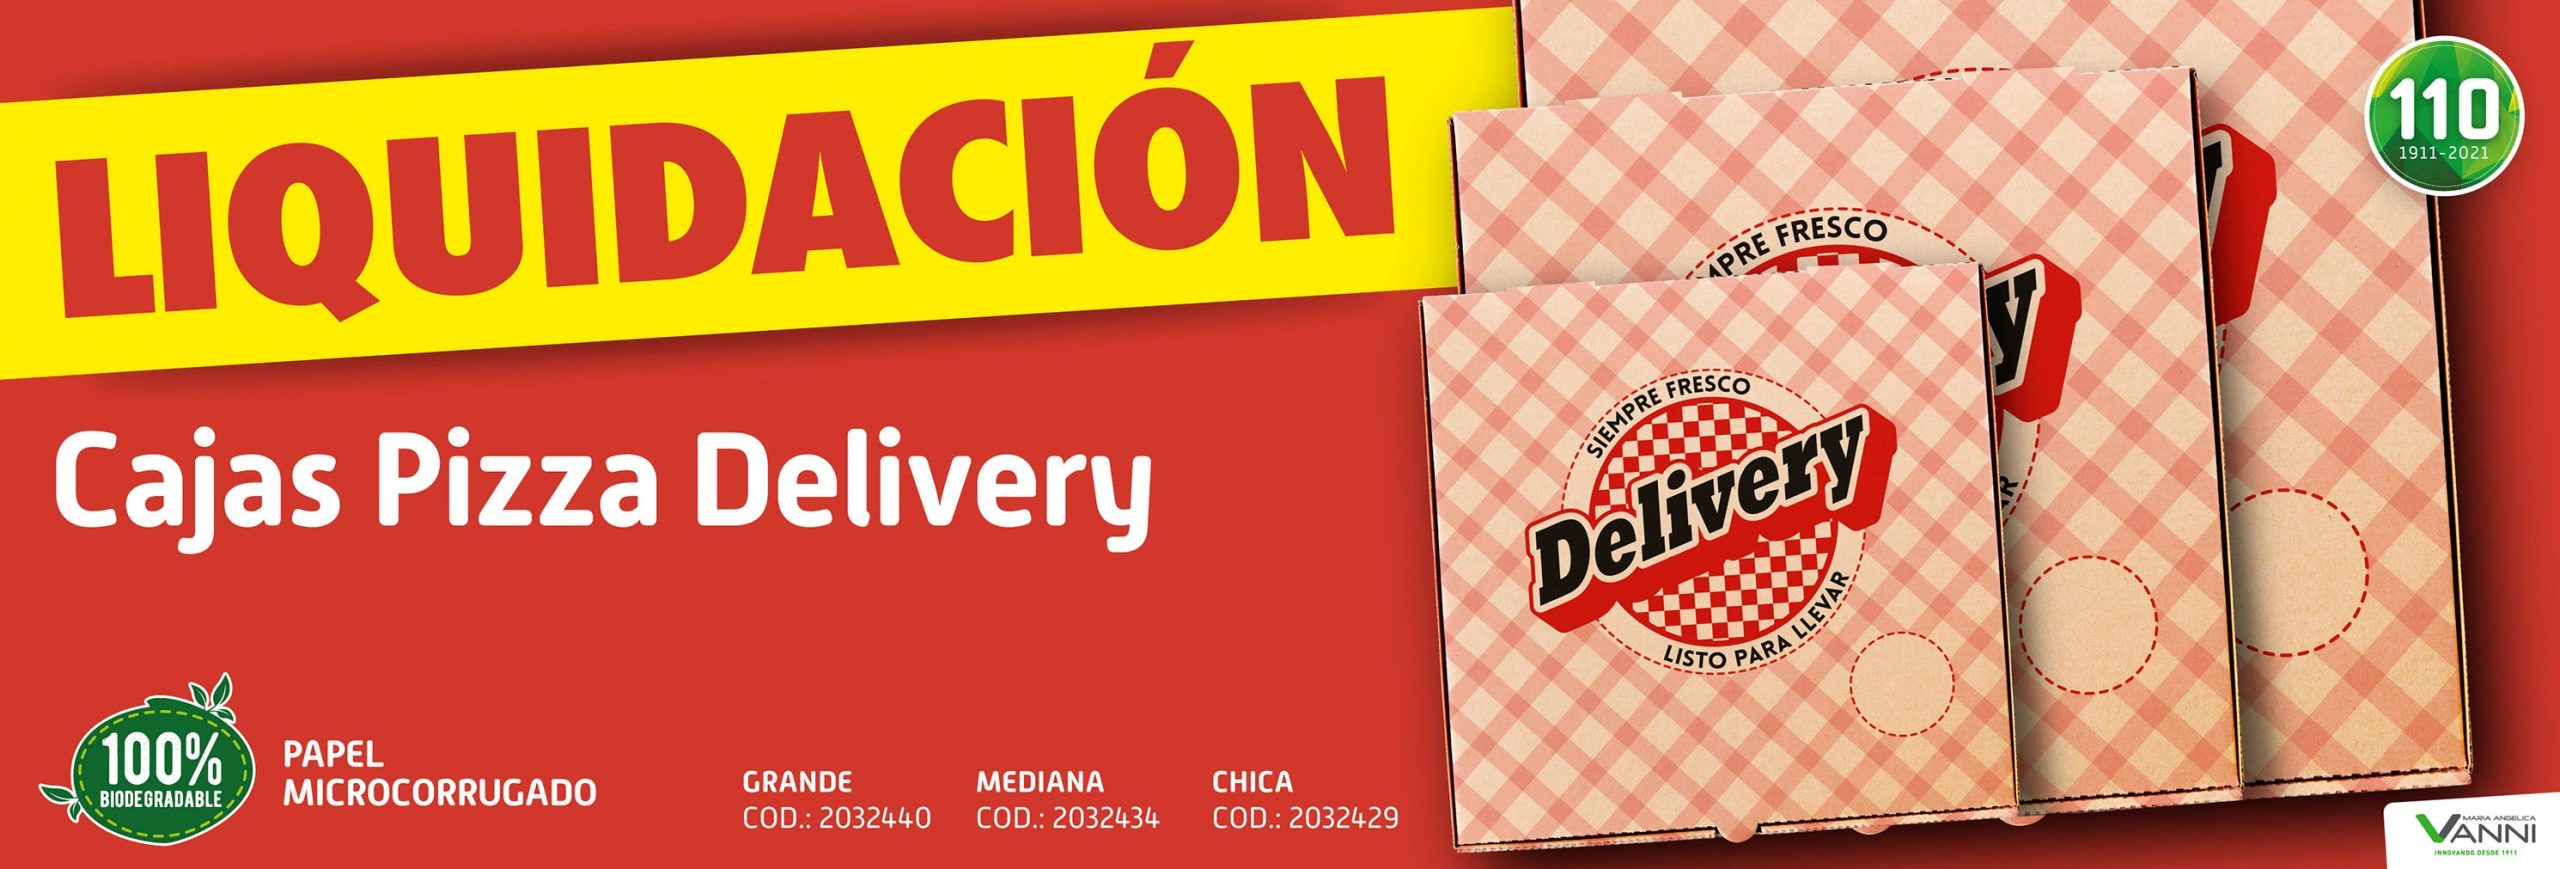 diapoweb_liq_cajas_pizza_delivery